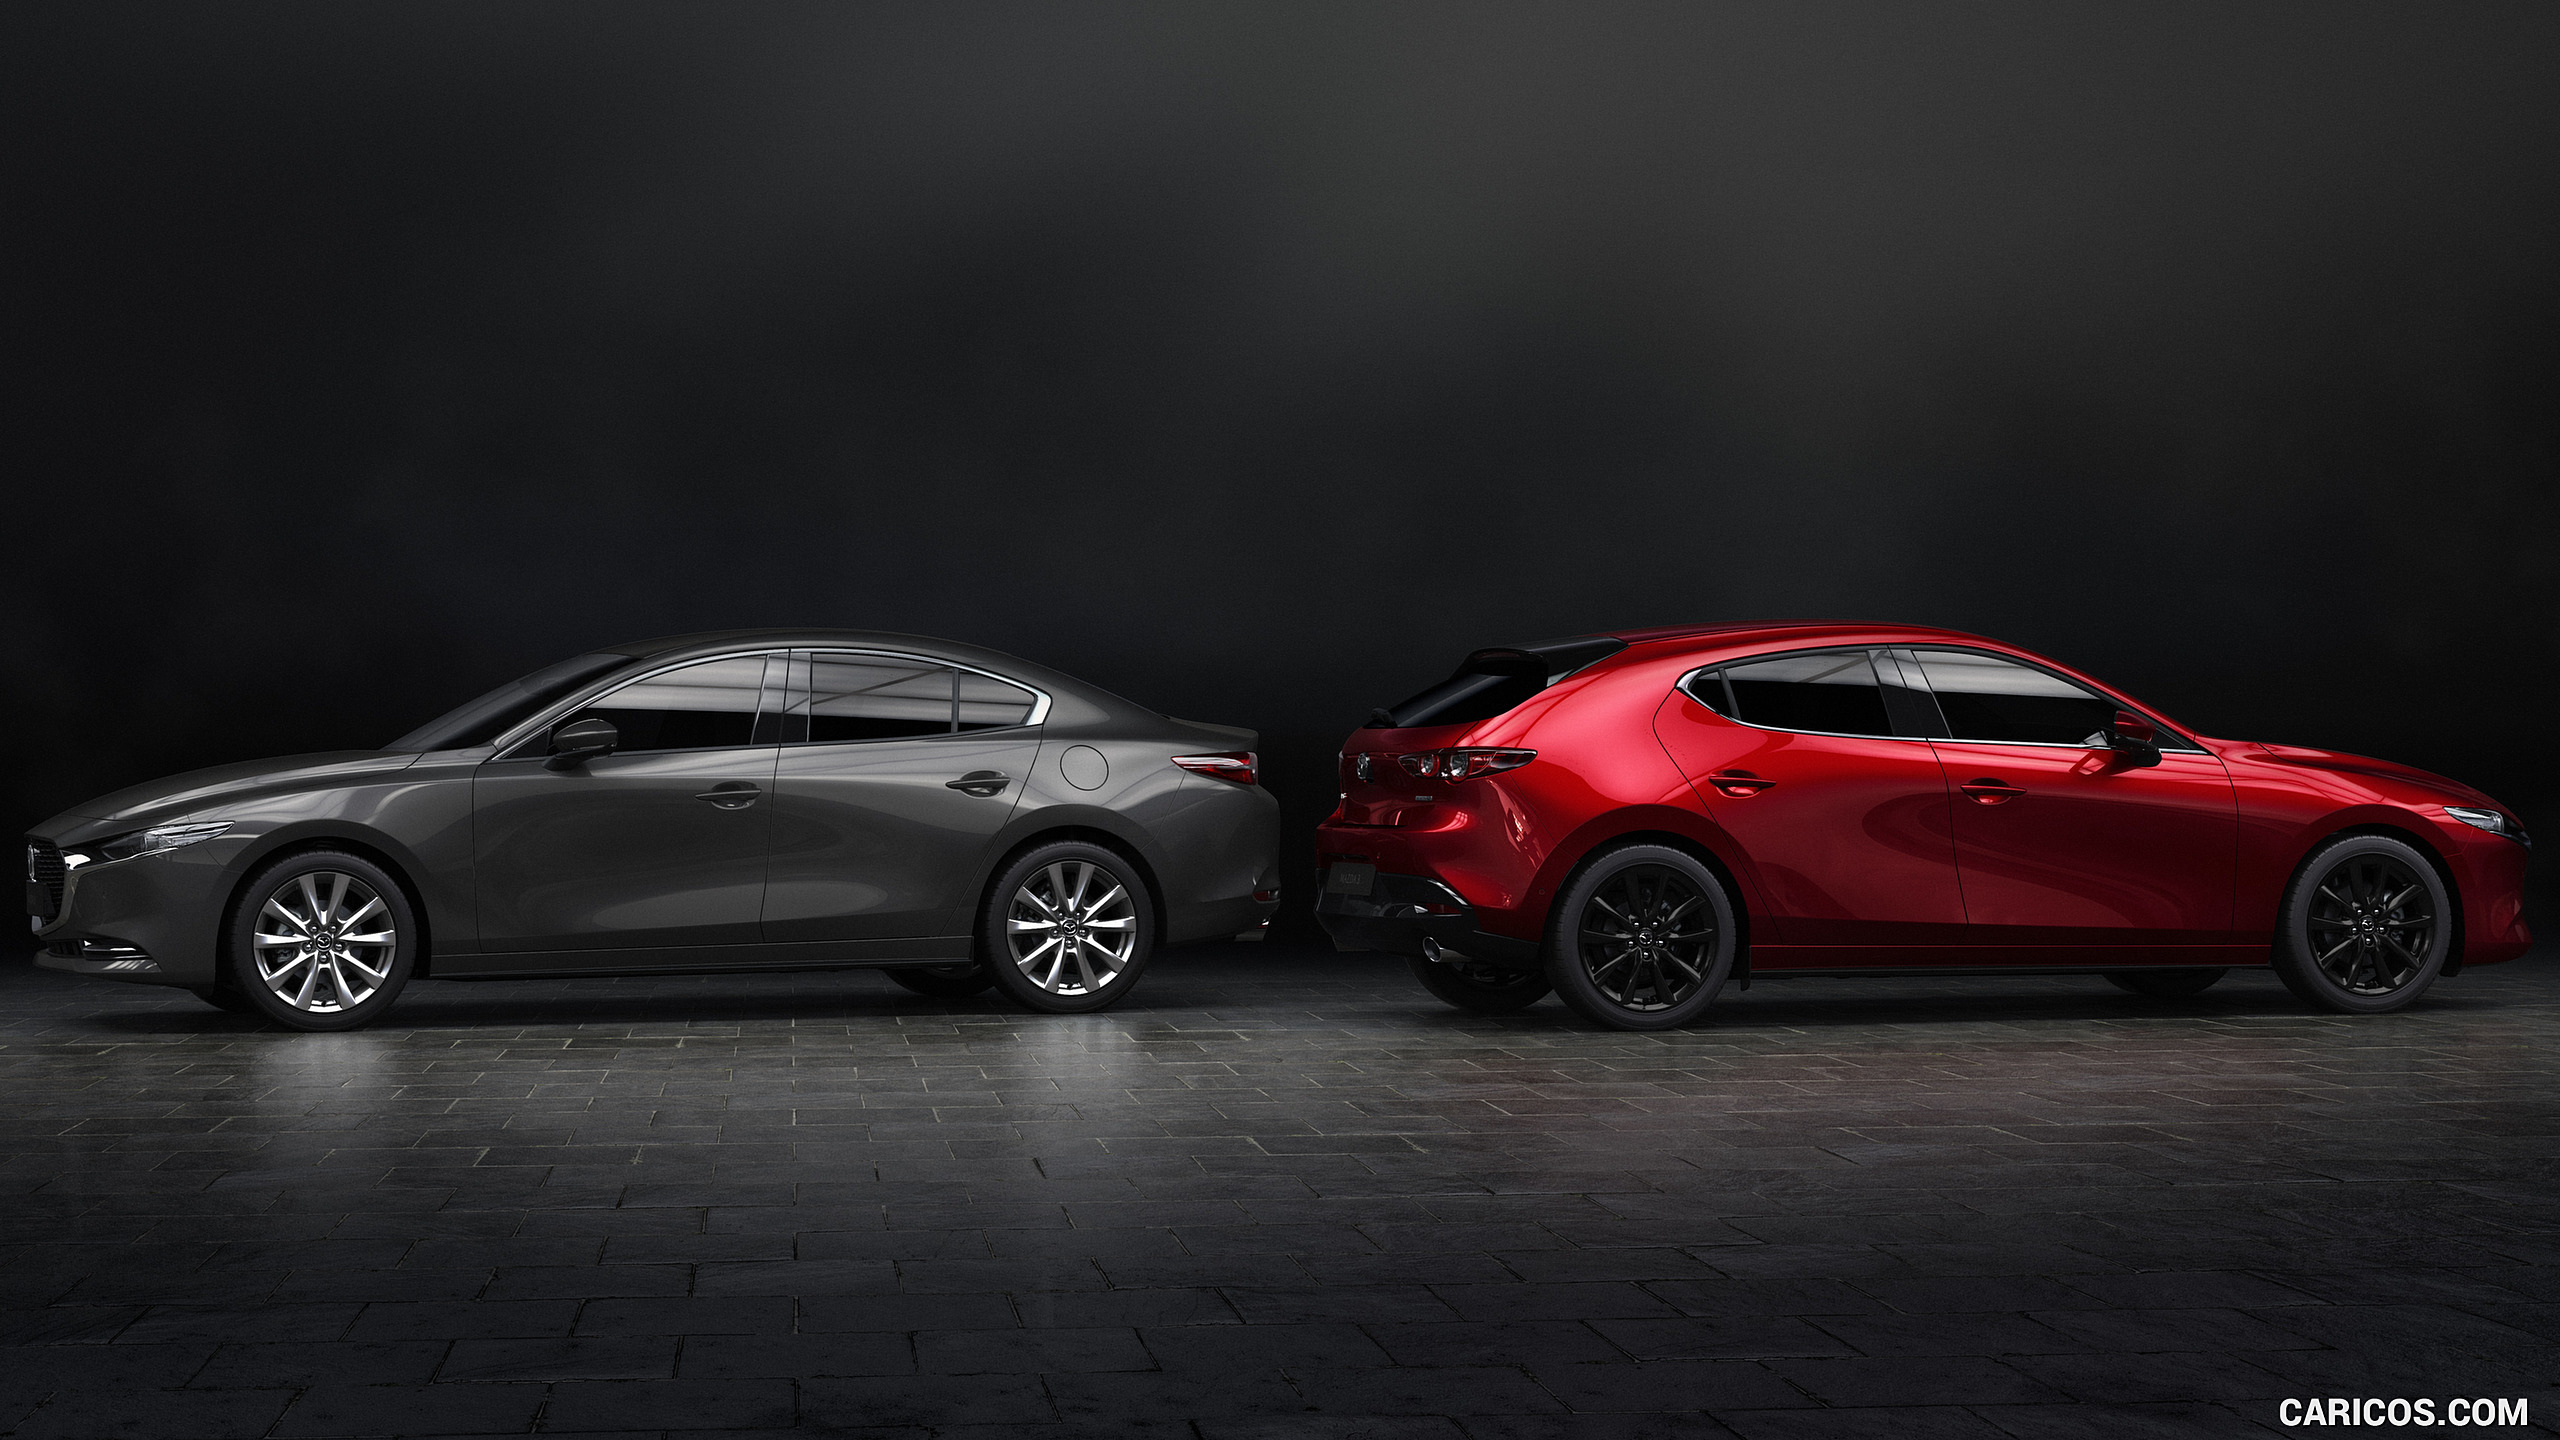 2019 Mazda3 Sedan and Hatchback - Side, #29 of 44